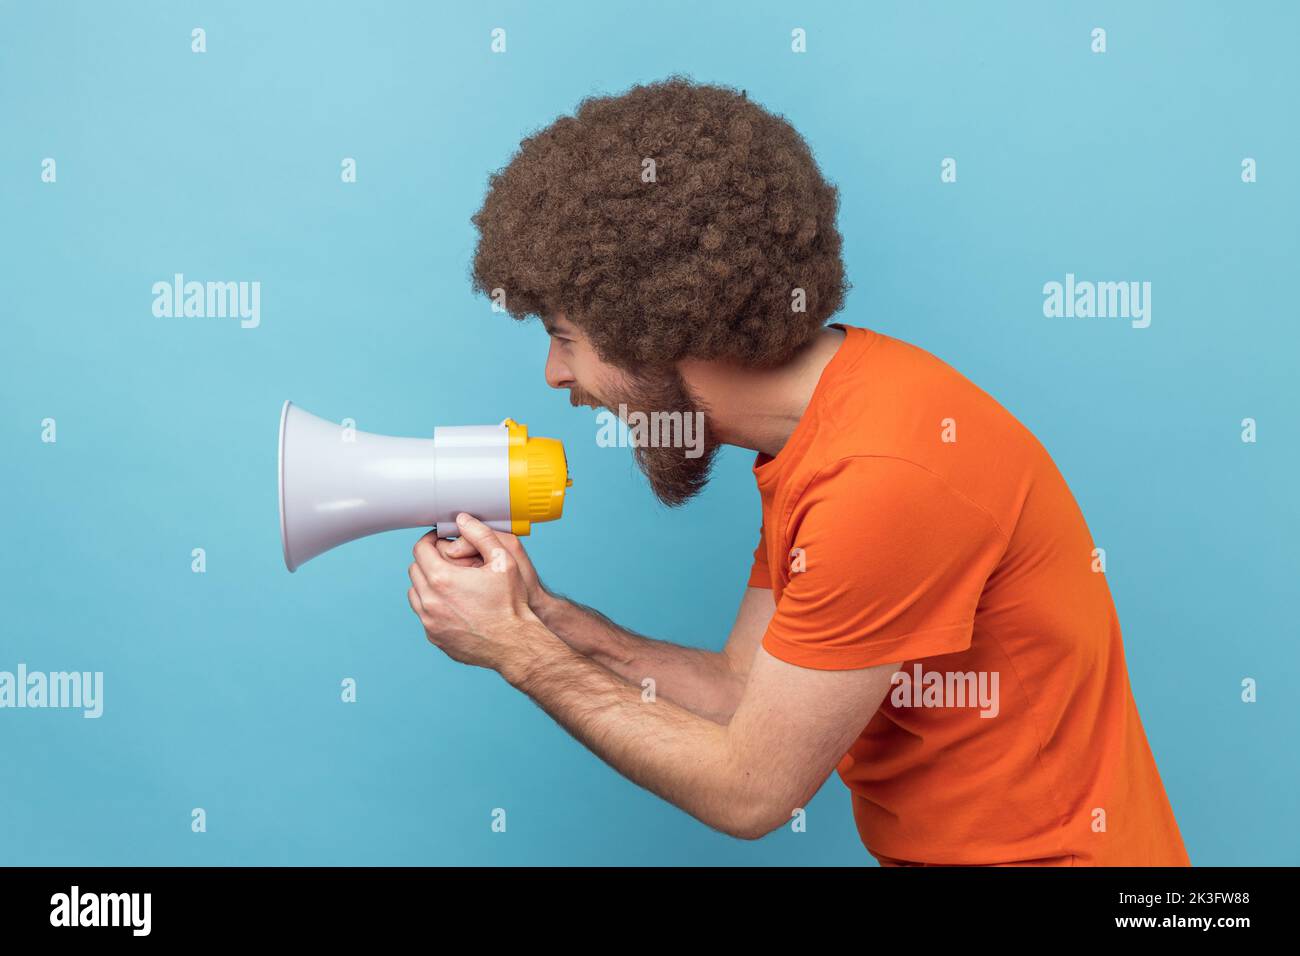 Vue latérale d'un homme avec une coiffure afro portant un T-shirt orange criant bruyamment au mégaphone, faisant annoncer, protestant, veut être entendu. Studio d'intérieur isolé sur fond bleu. Banque D'Images